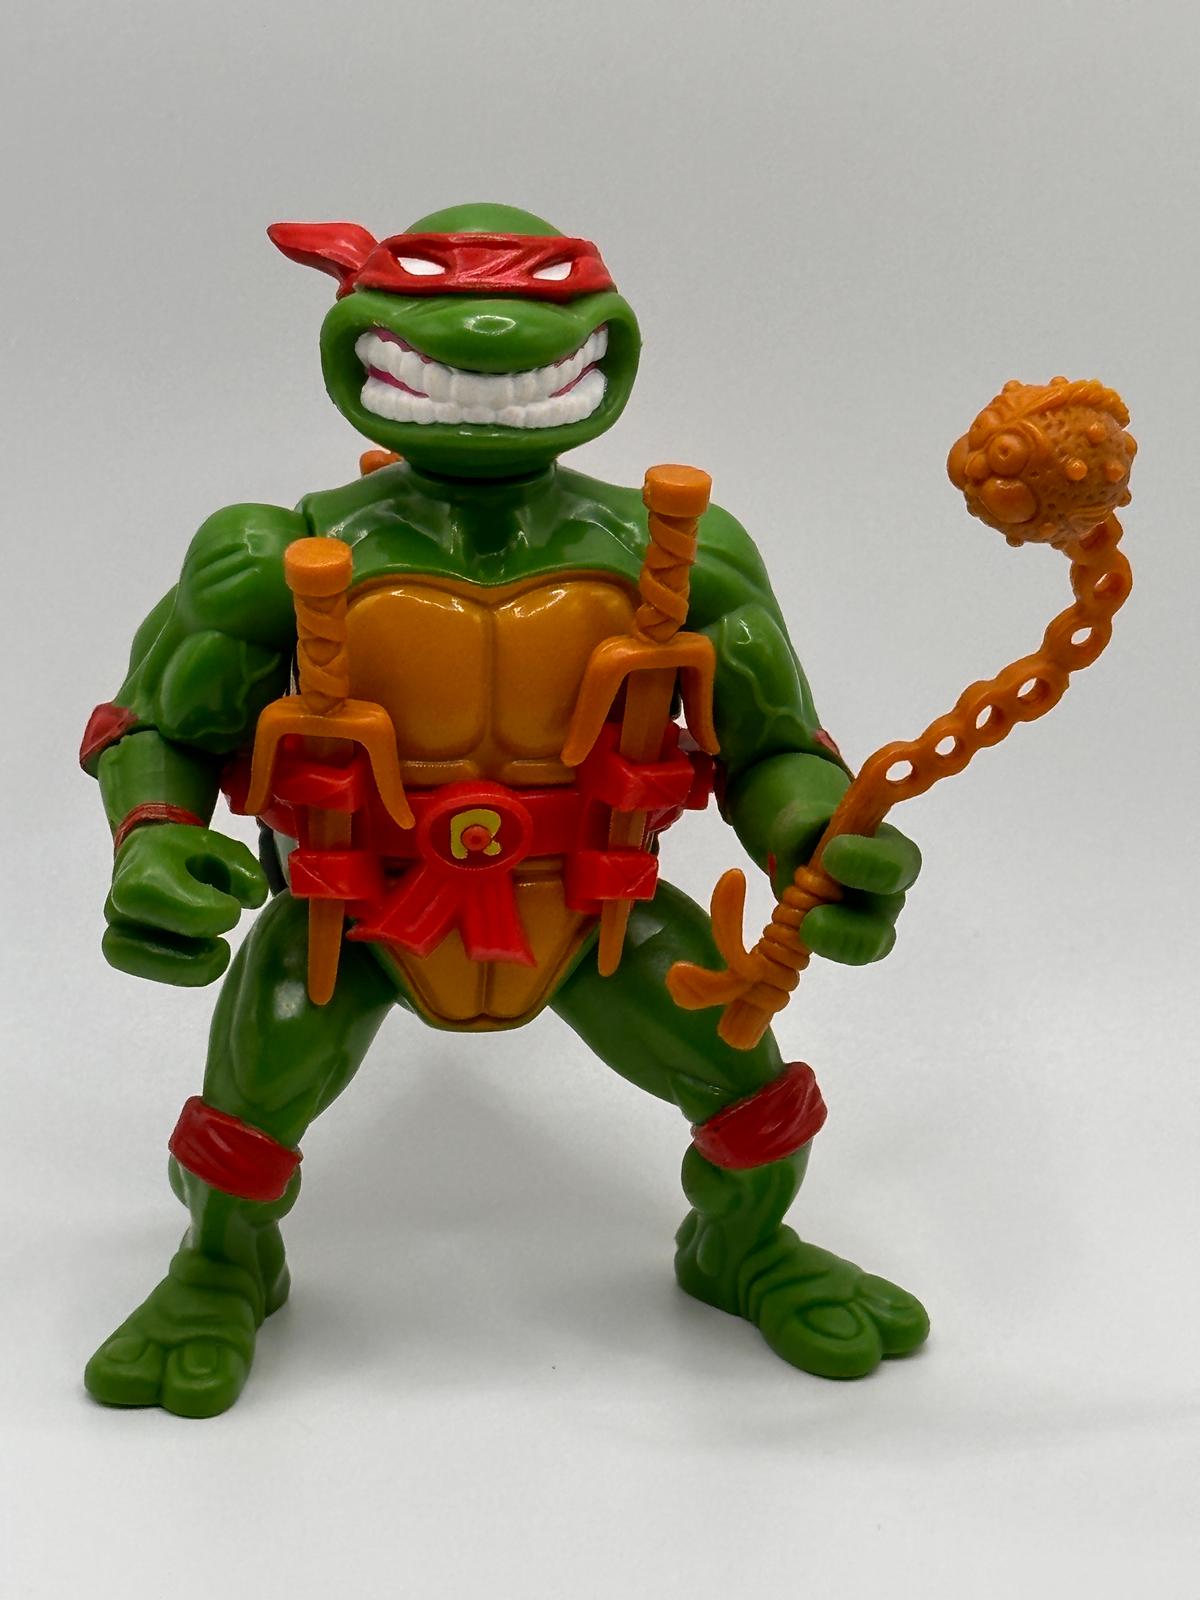 1991 TMNT/Teenage Mutant Ninja Turtles Raphael with Storage Shell Action Figure